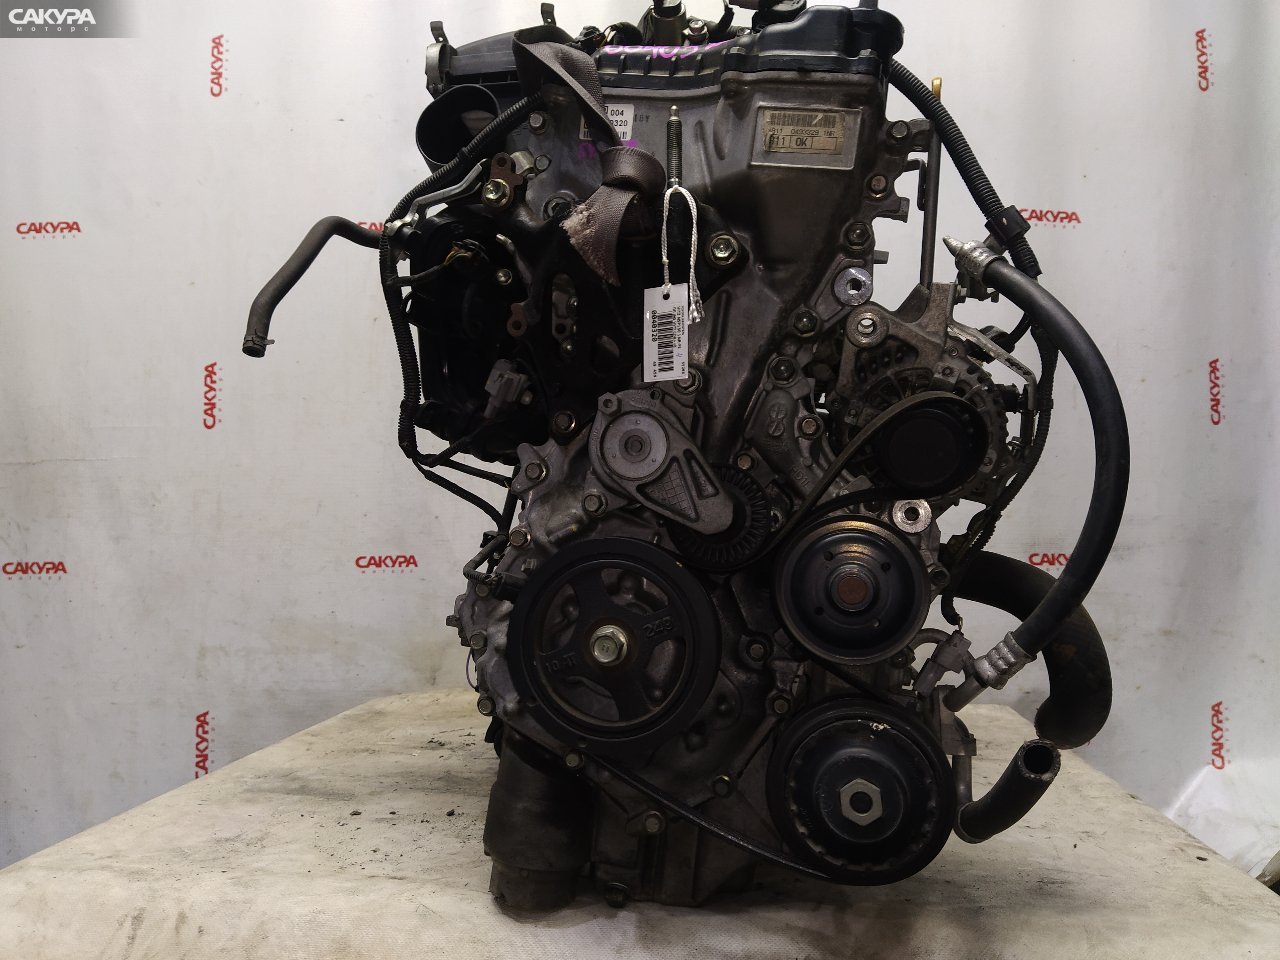 Двигатель Toyota Vitz NSP130 1NR-FE: купить в Сакура Красноярск.